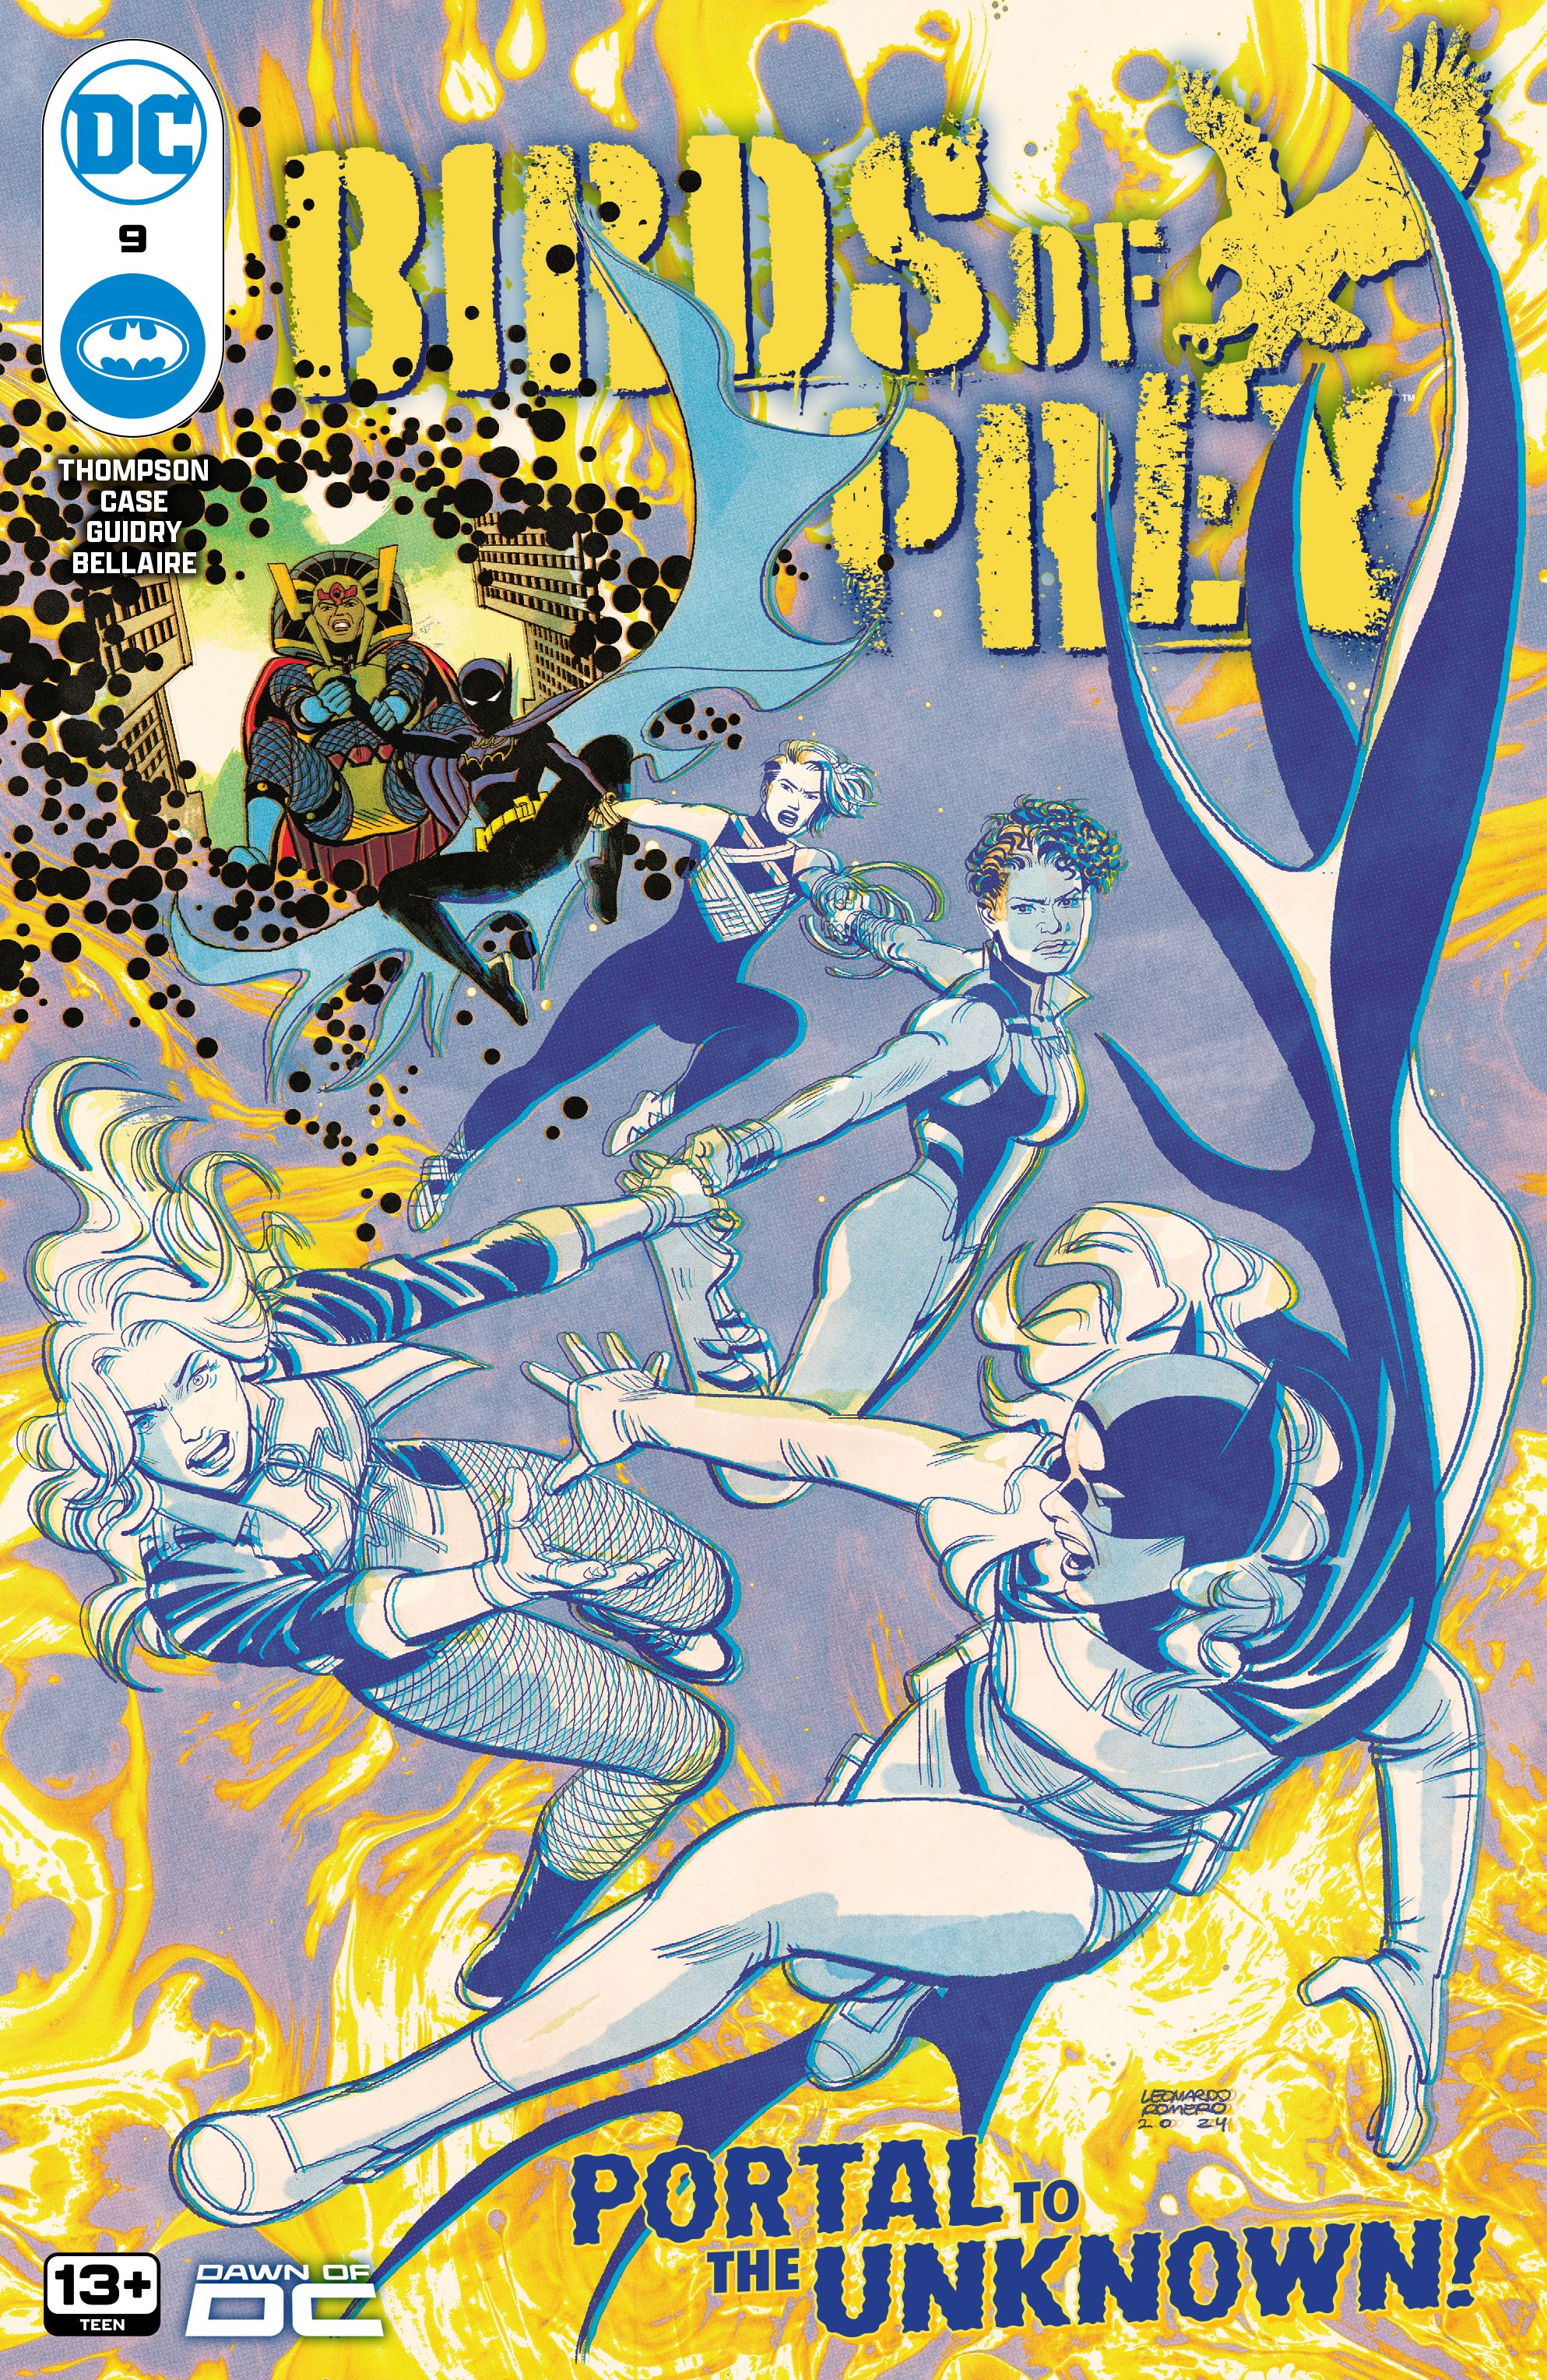 Birds of Prey #9 cover, Black Canary, Vixen, Sin, Cassandra Cain Batgirl, & Big Barda go through a portal.